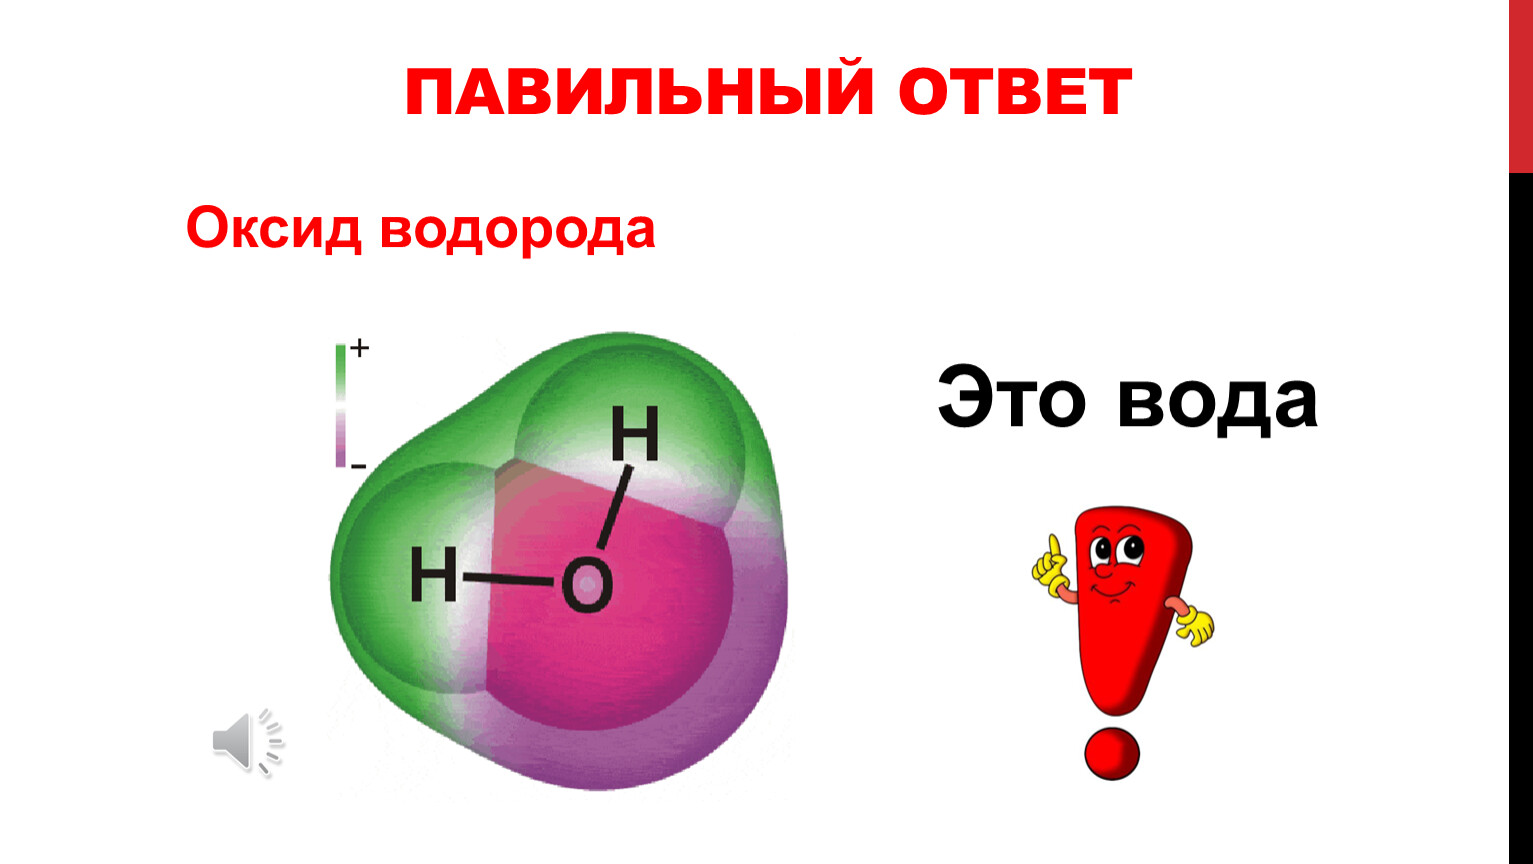 Оксид водорода это простыми словами. Оксид водорода. Оксид водорода формула. Вода оксид водорода. H2o оксид водорода.